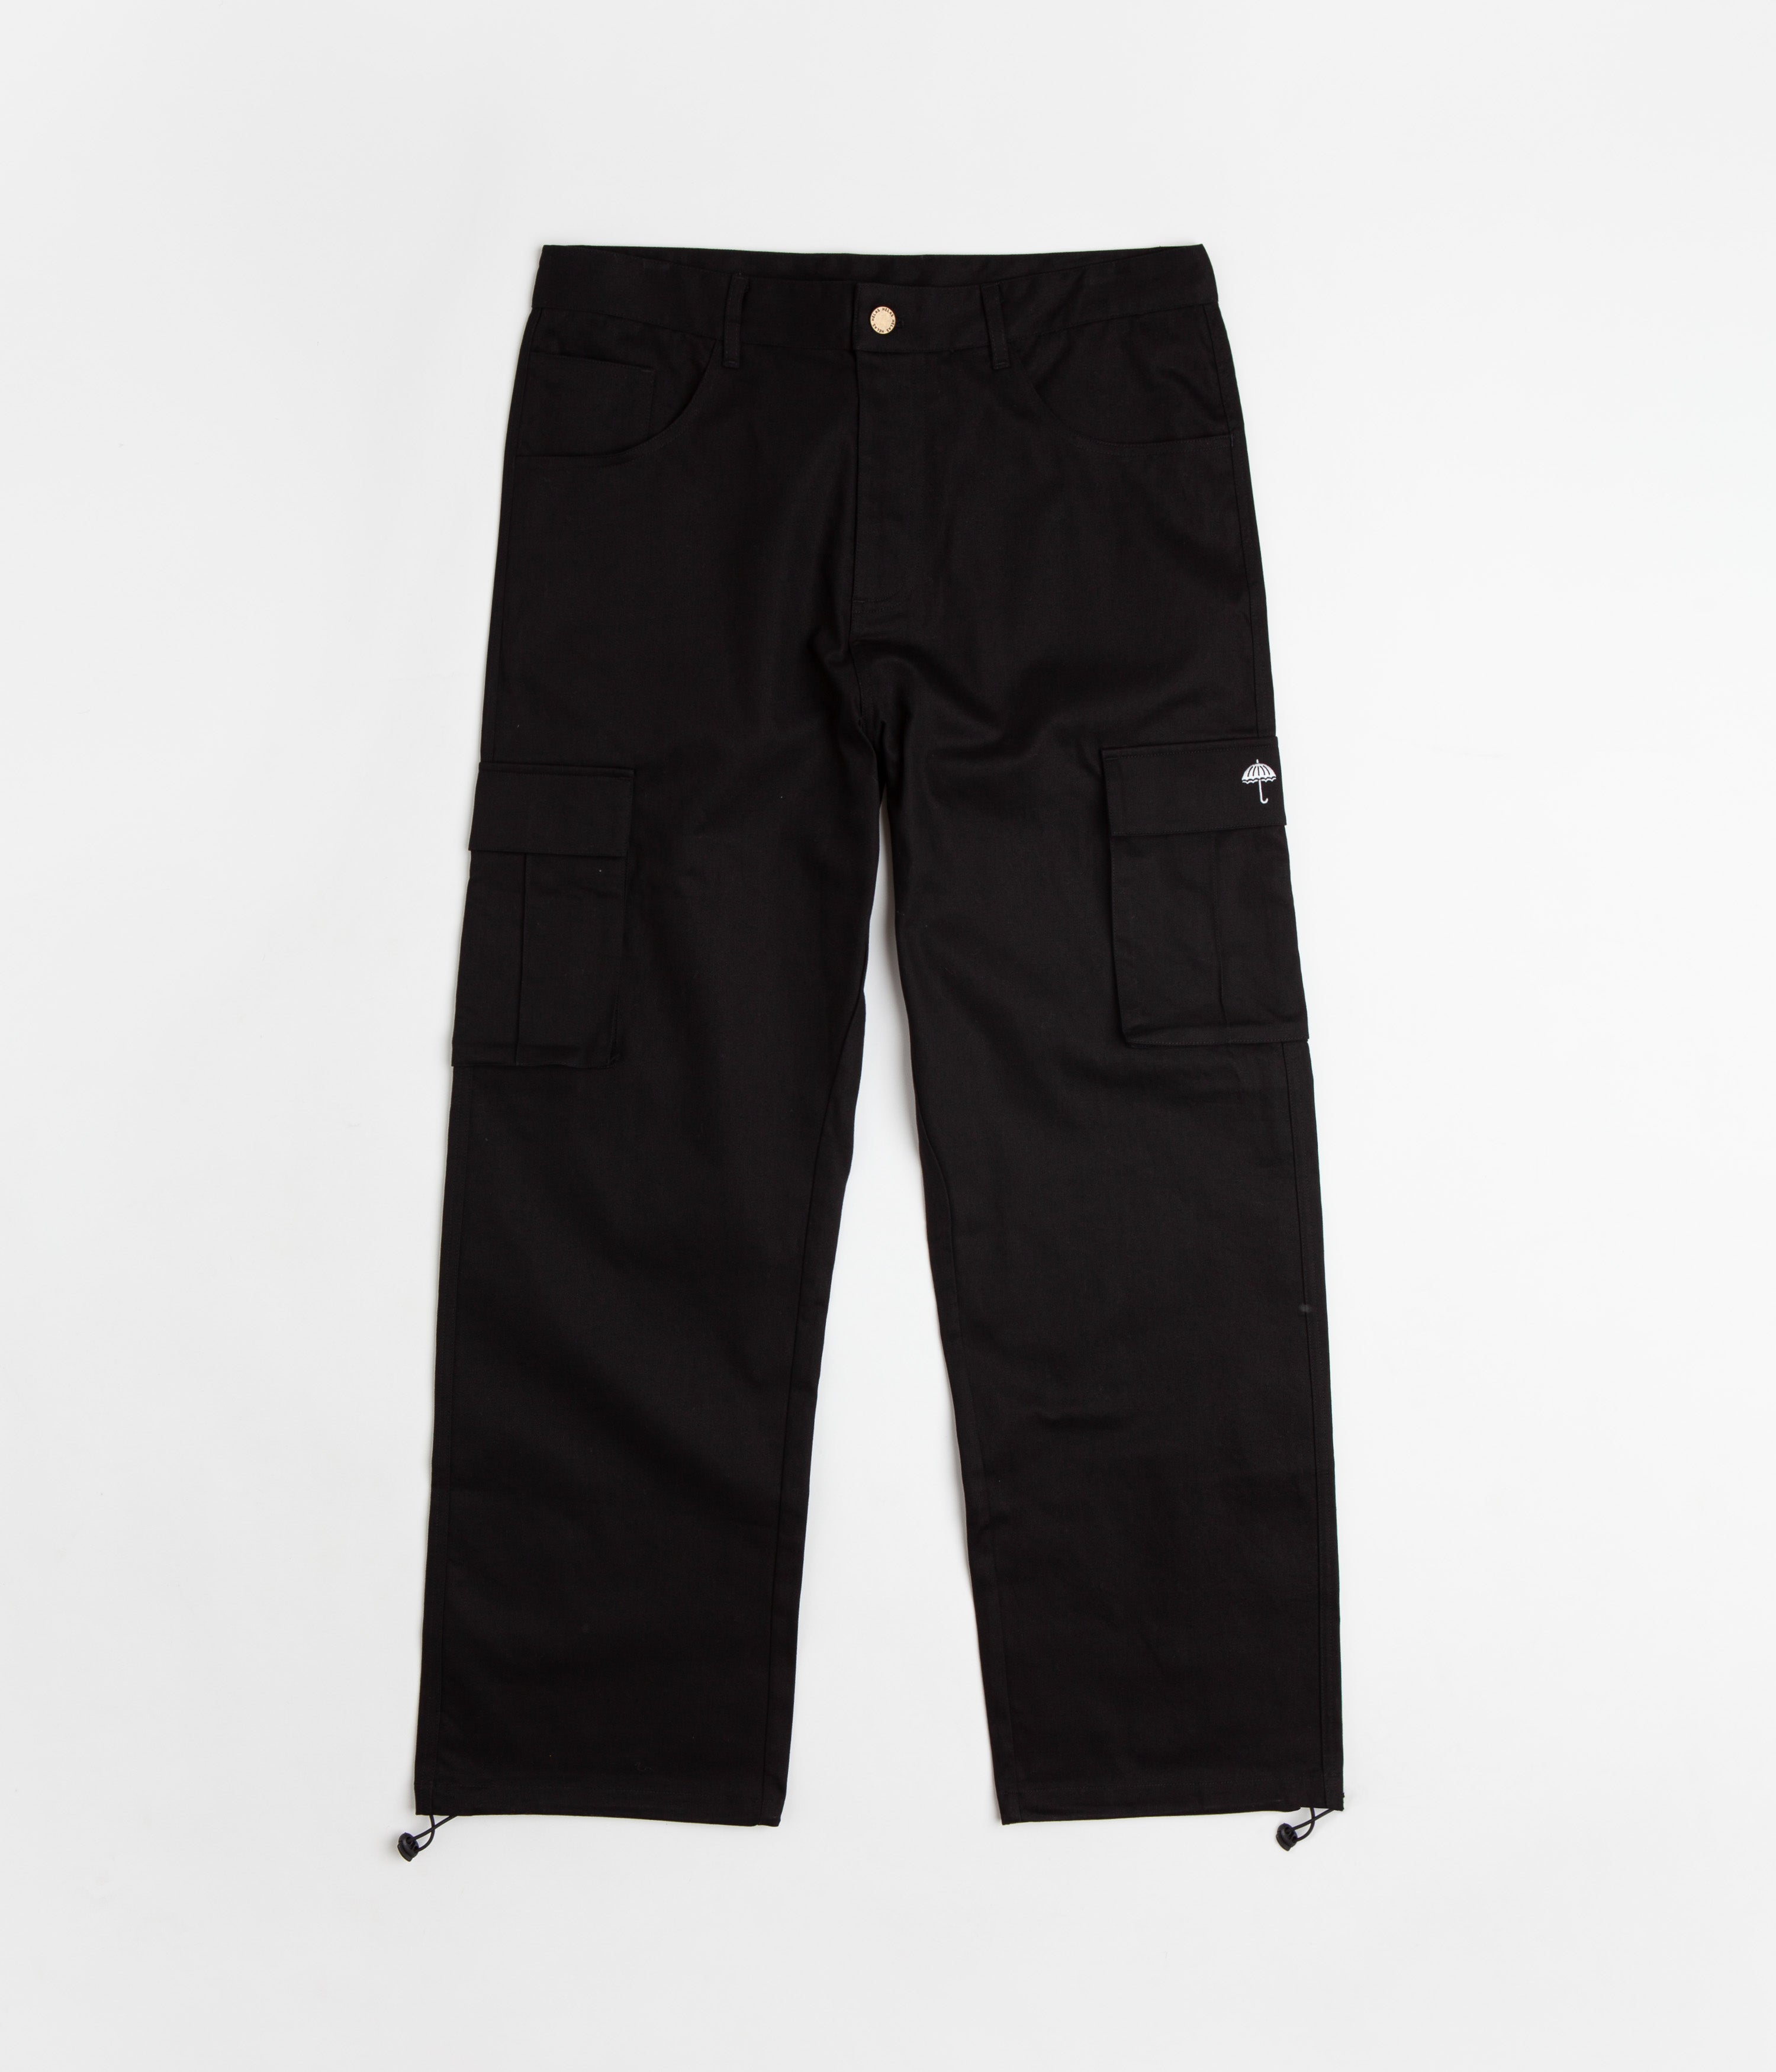 Men's Grain Leather Mcgregor Motorcycle Trousers in Black | Belstaff US